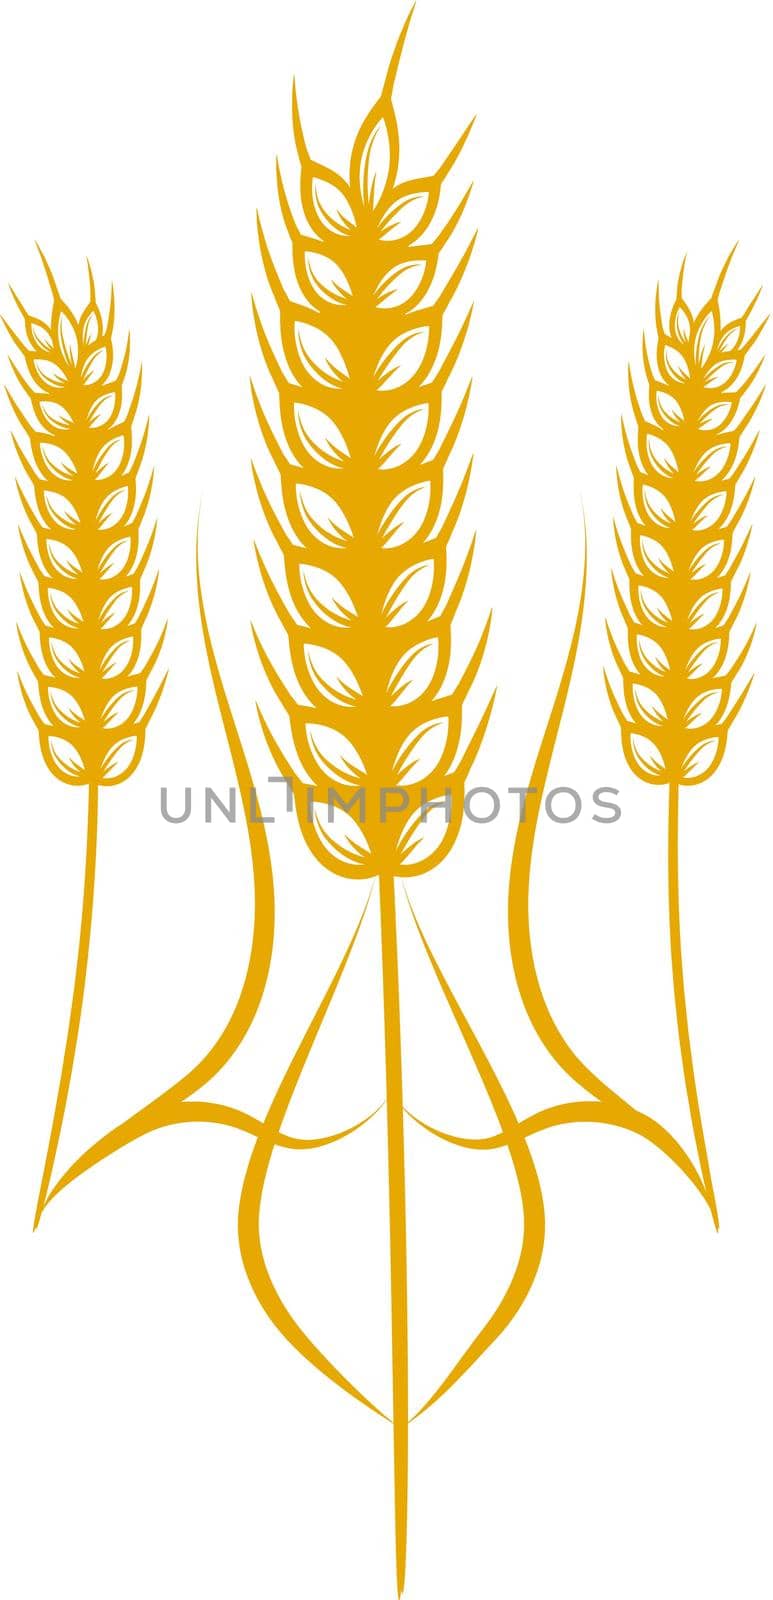 Ukraine state symbol designed by biruzza